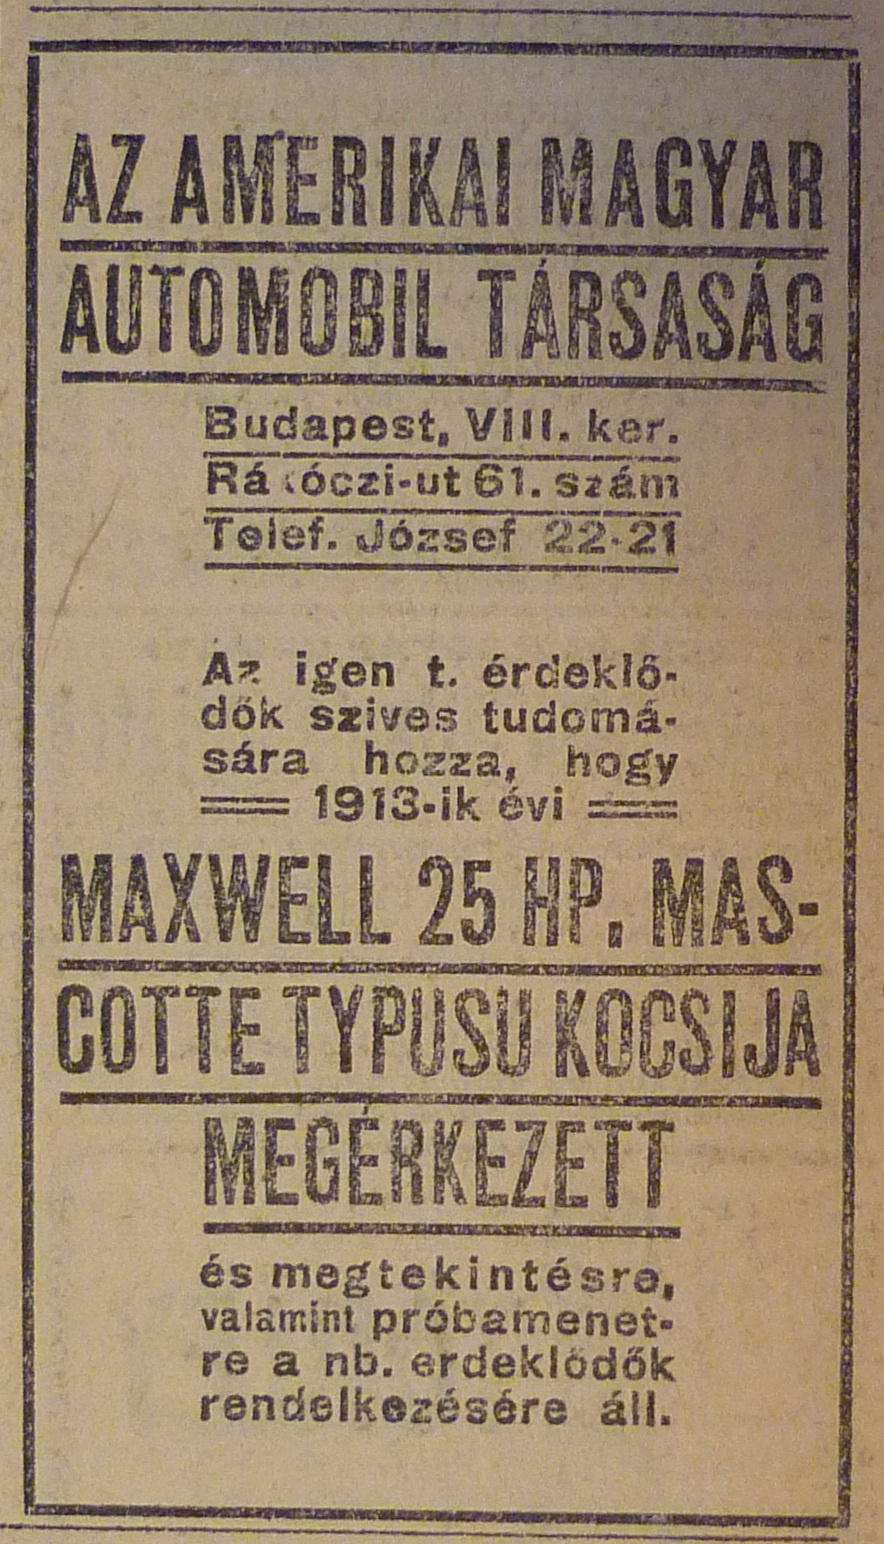 RakocziUt61-1913Aprilis-AzEstHirdetes